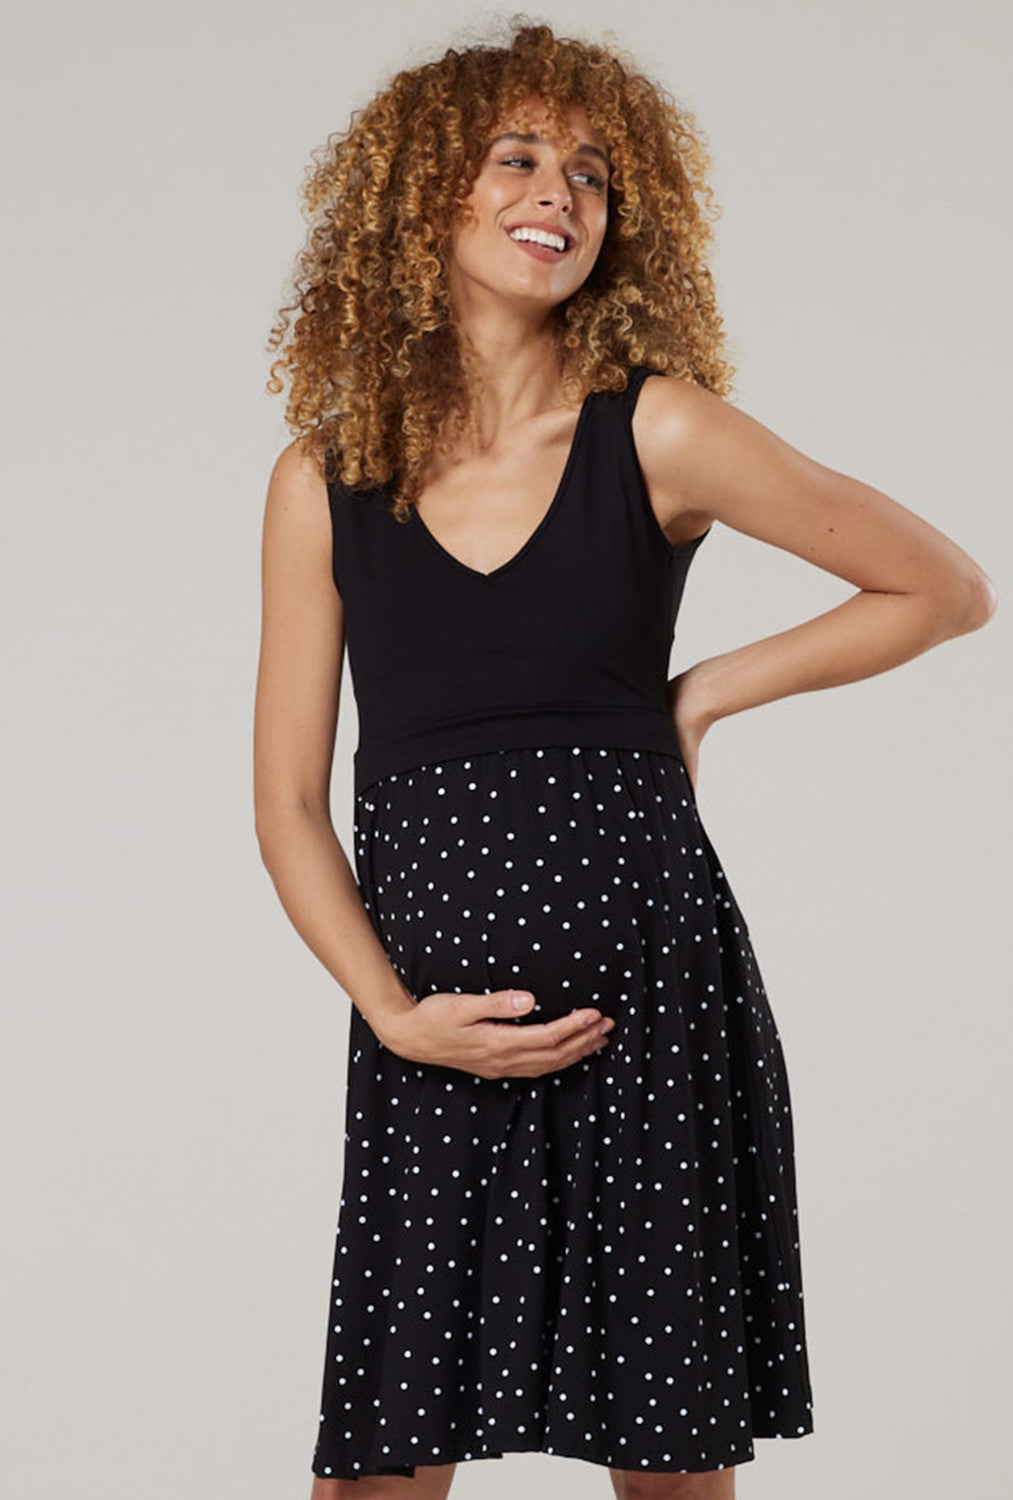 Maternity Summer Nursing Dress in Dots